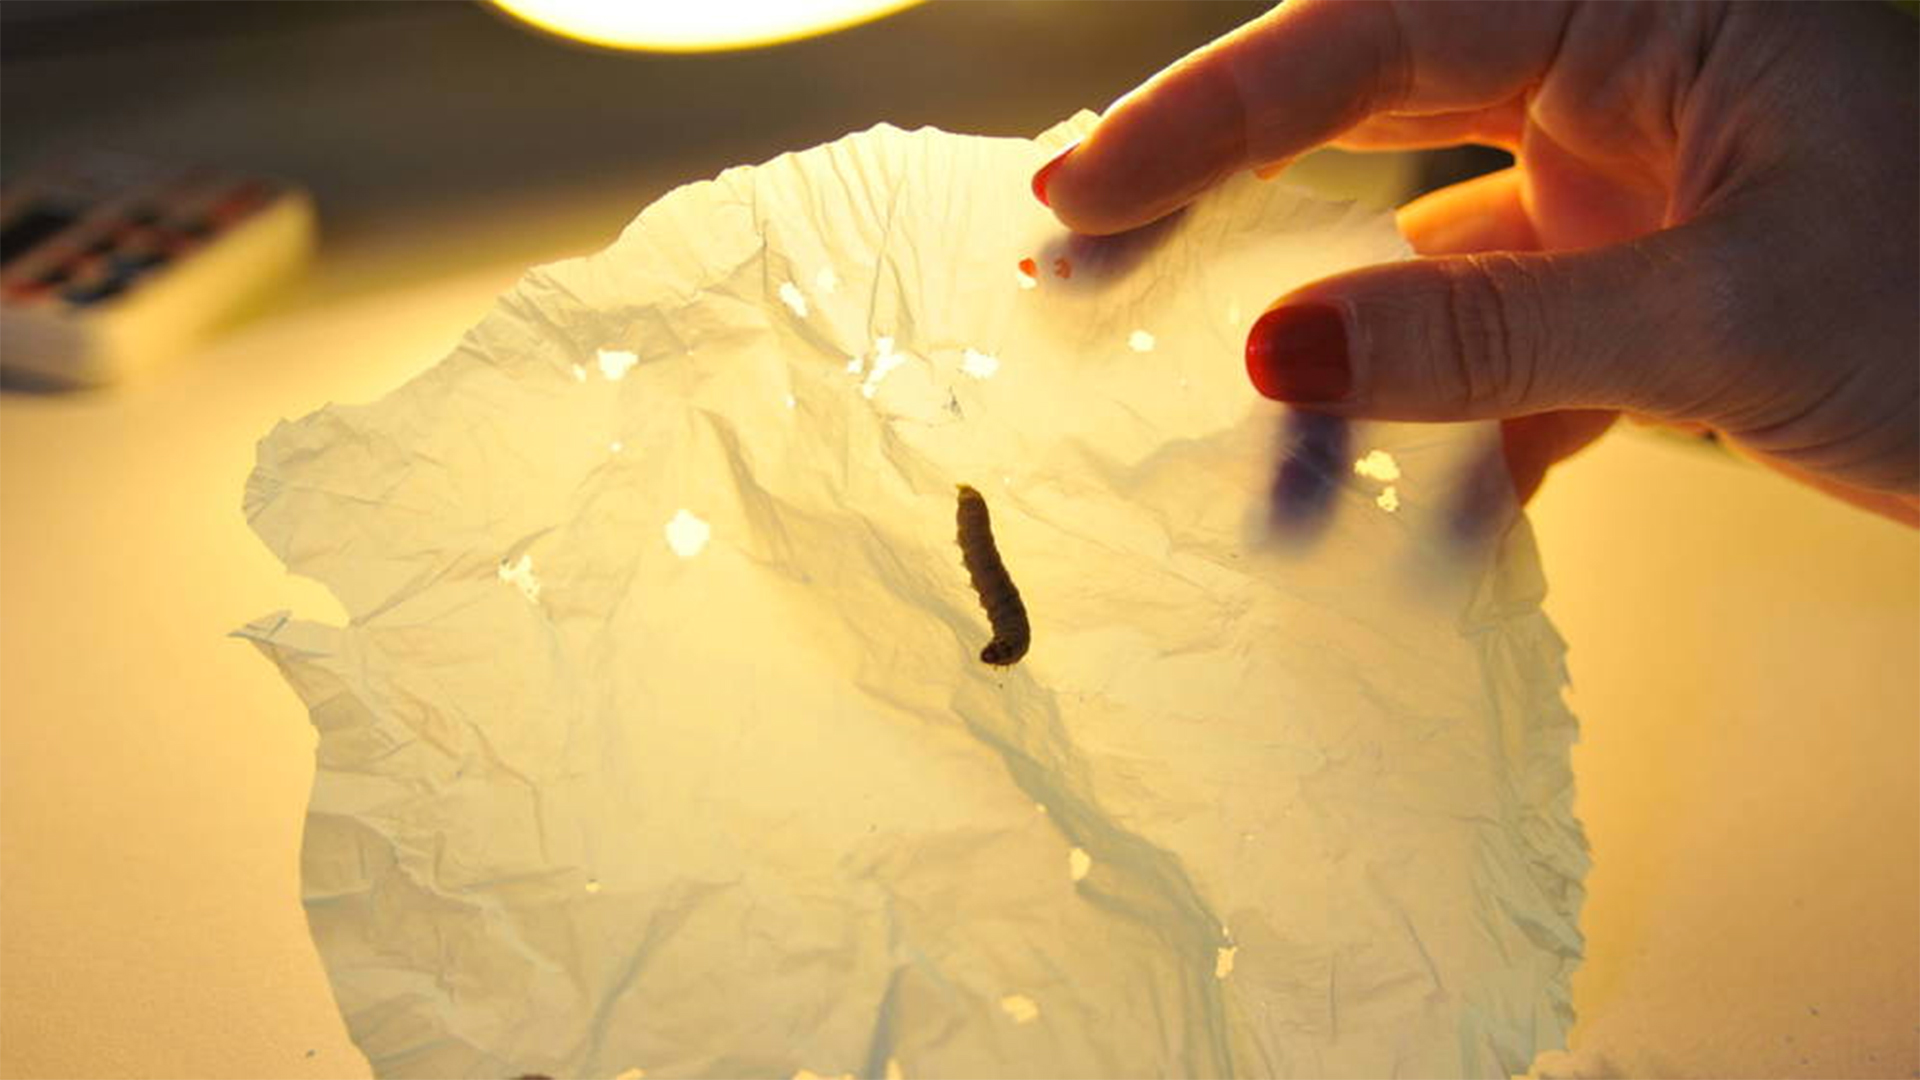 Científicos descubren un gusano capaz de comer plástico